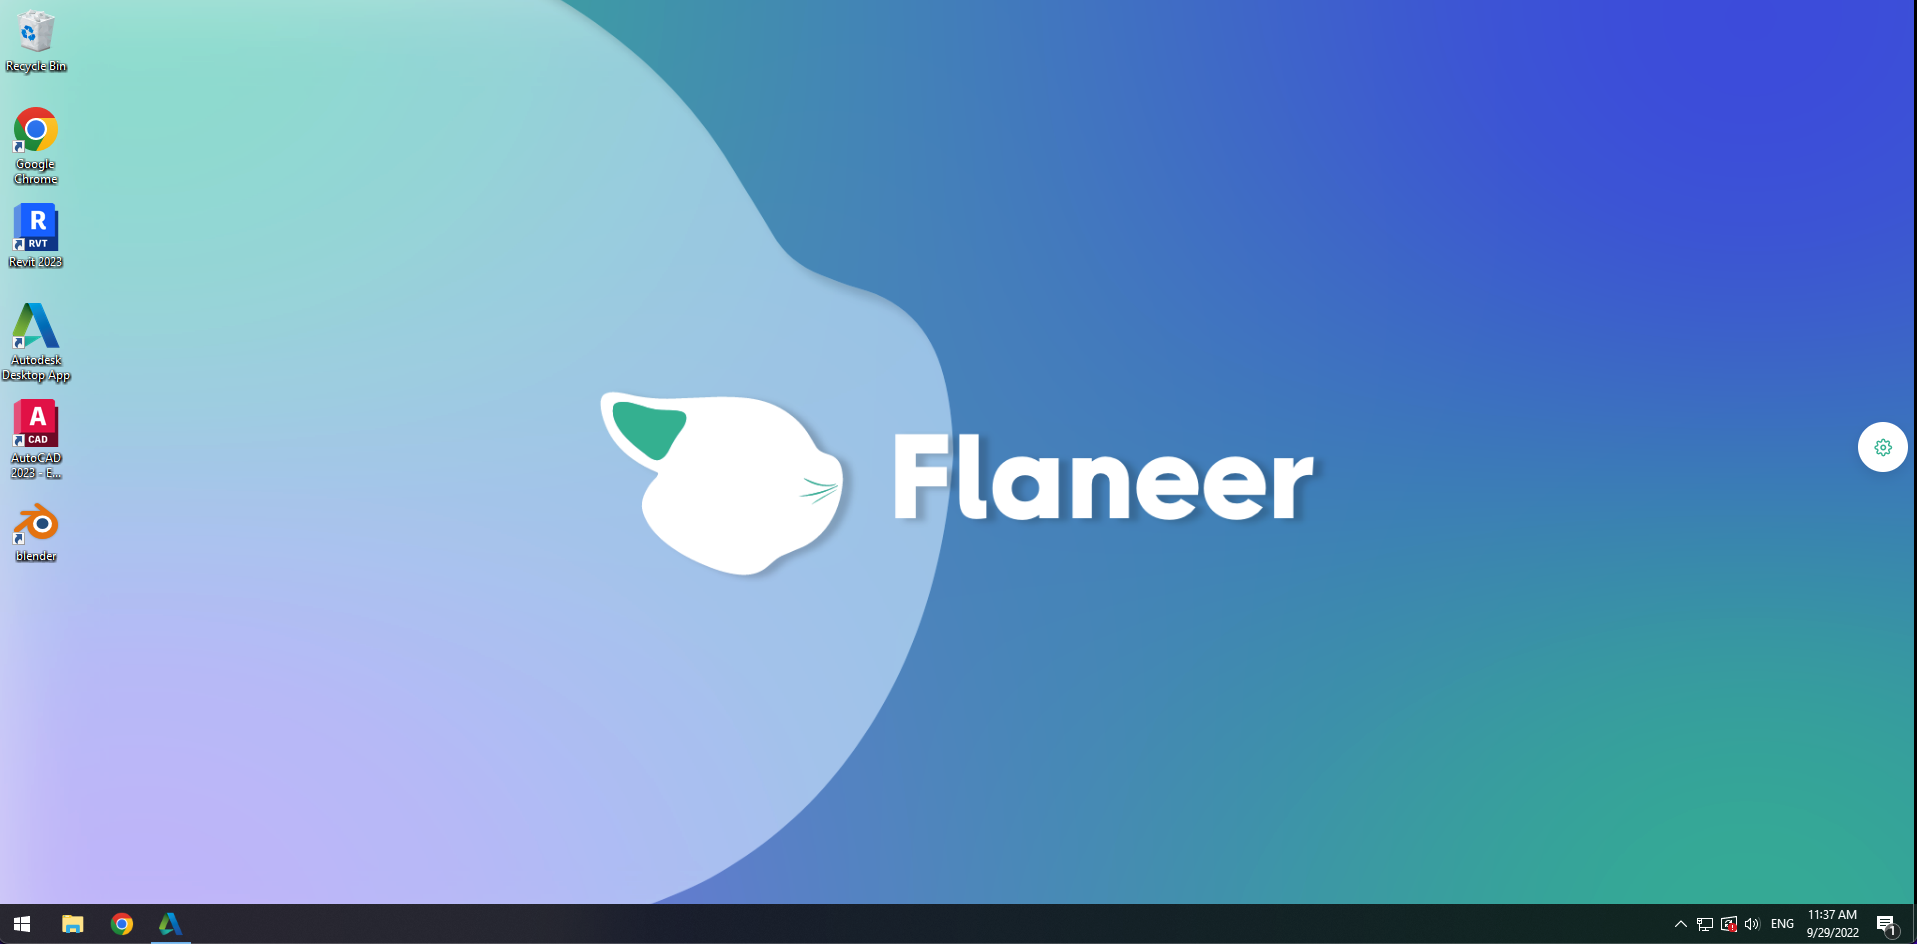 Flaneer